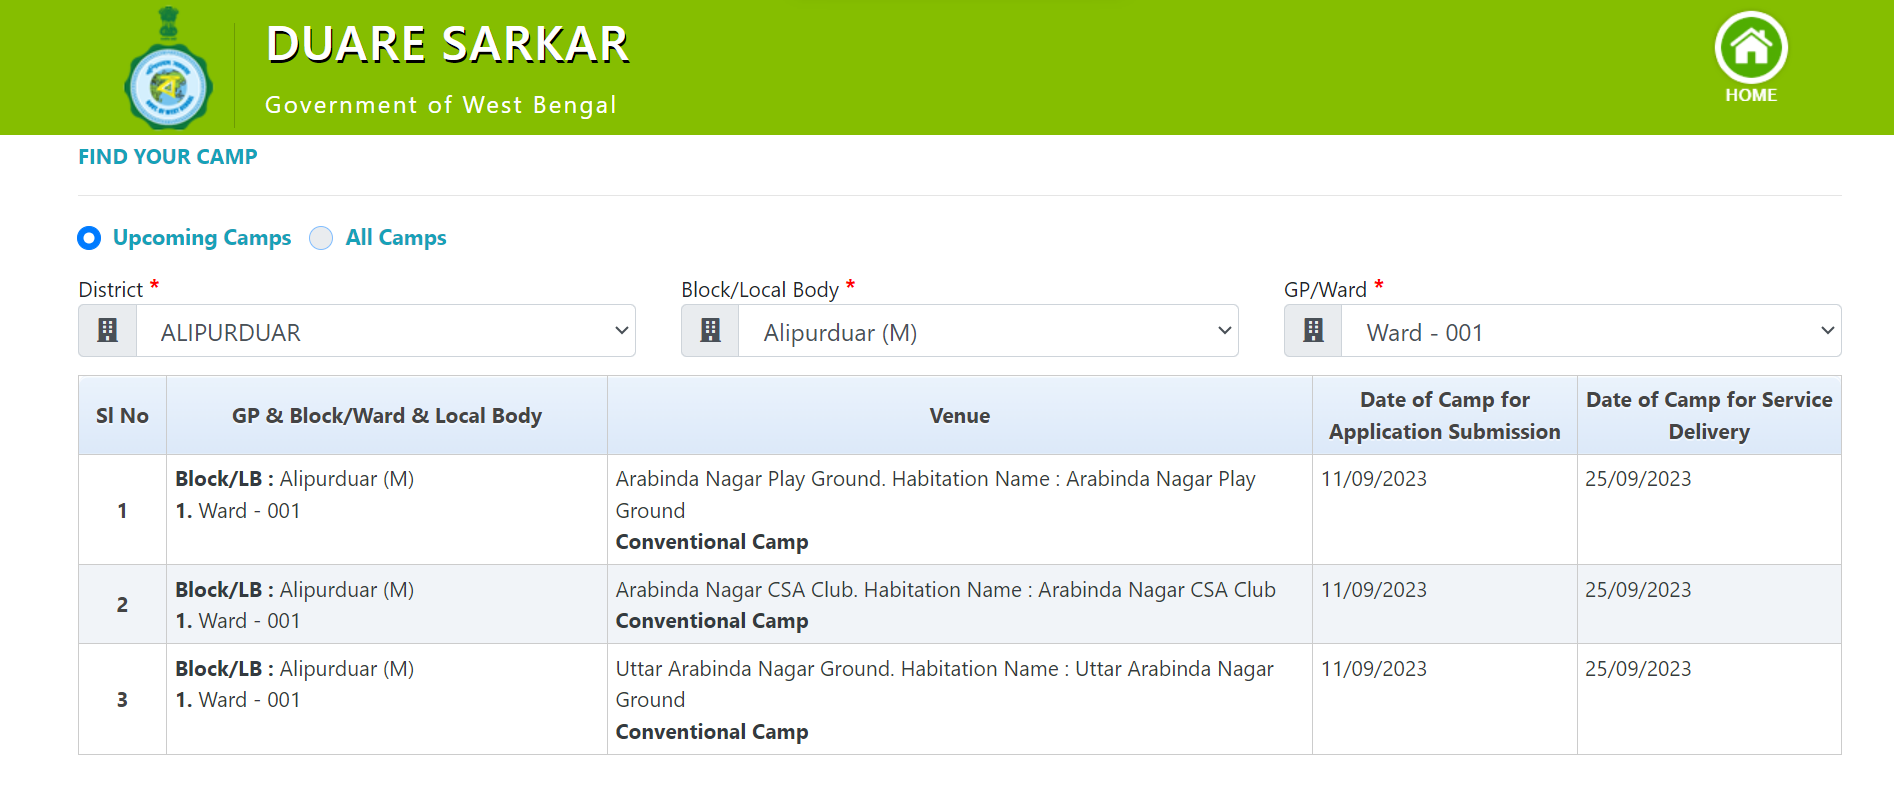 Duare Sarkar Upcoming Camp List